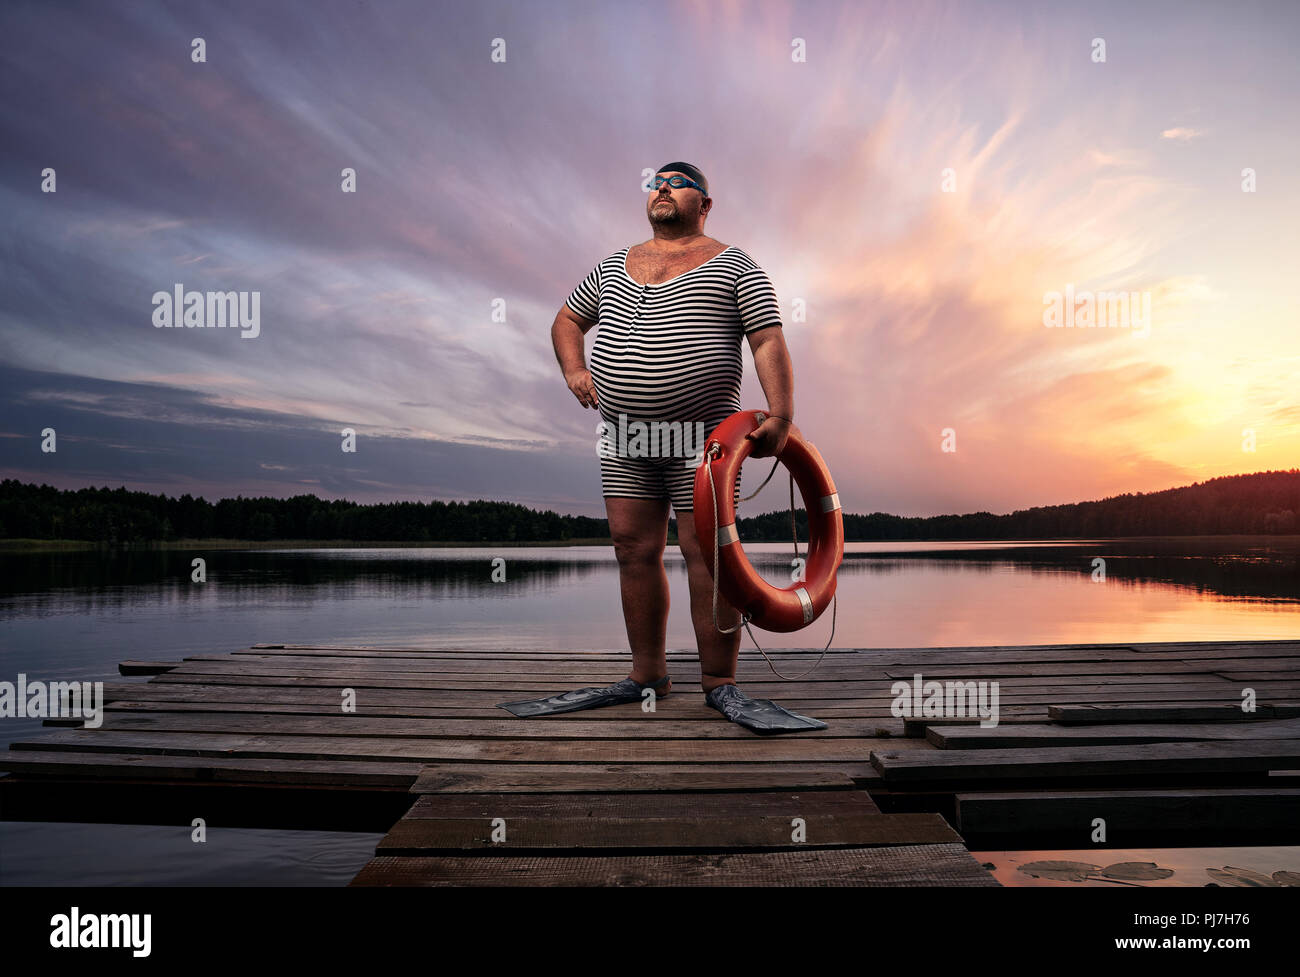 El sobrepeso, la nadadora Fuunny retro por el lago al atardecer, con espacio de copia Foto de stock